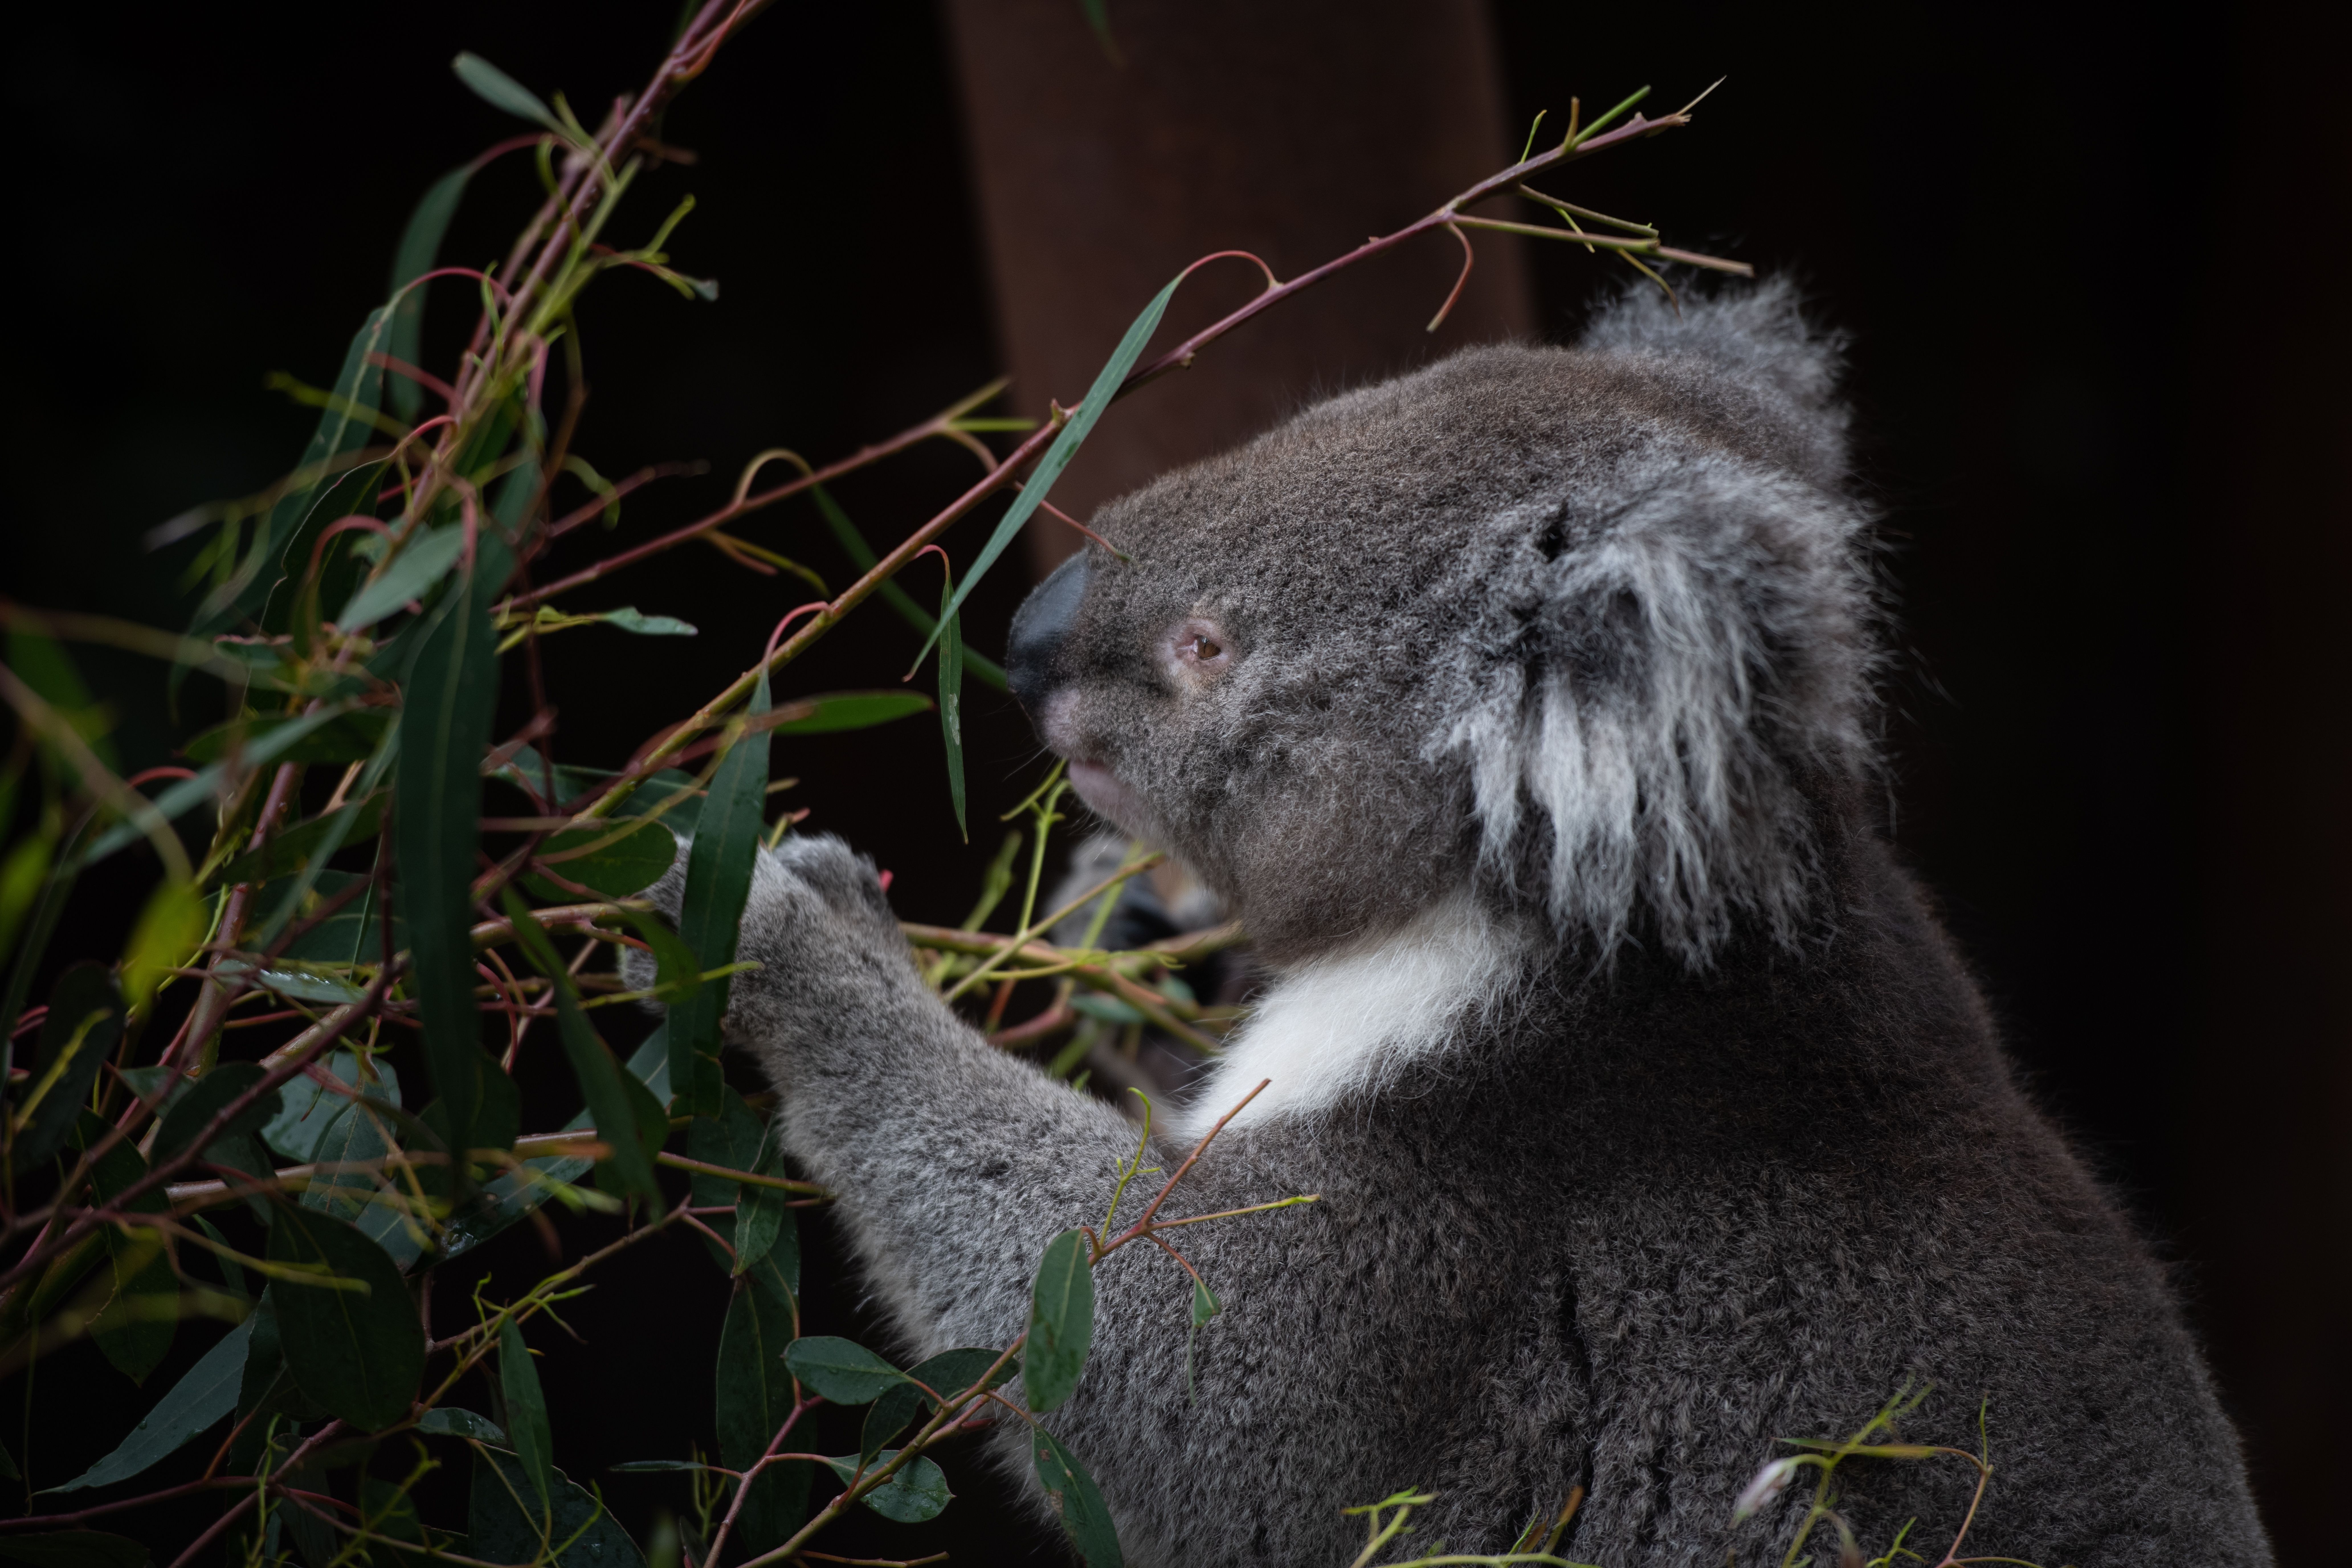 Koala at Gumbaya World in Victoria